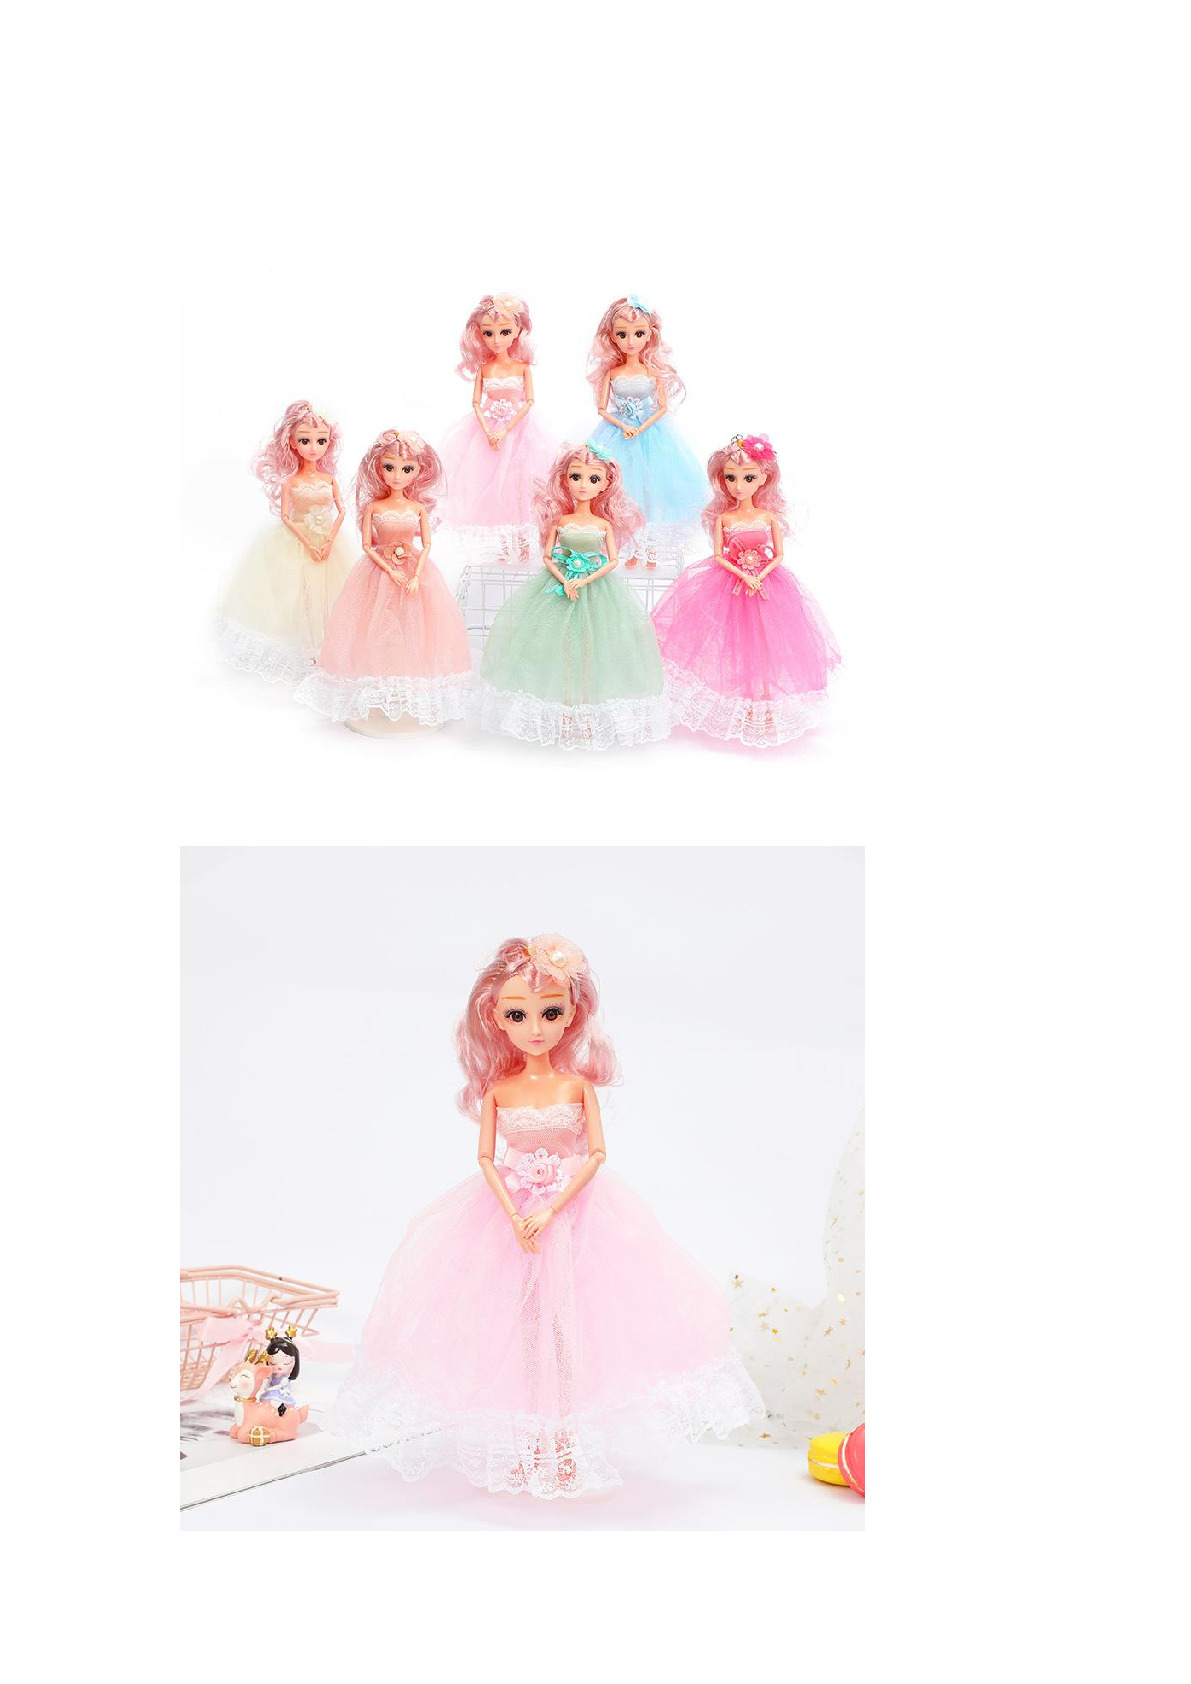 地摊夜市爆款32厘米女孩迷糊娃娃扮装玩具红发蕾丝洋裙芭比娃娃详情图1